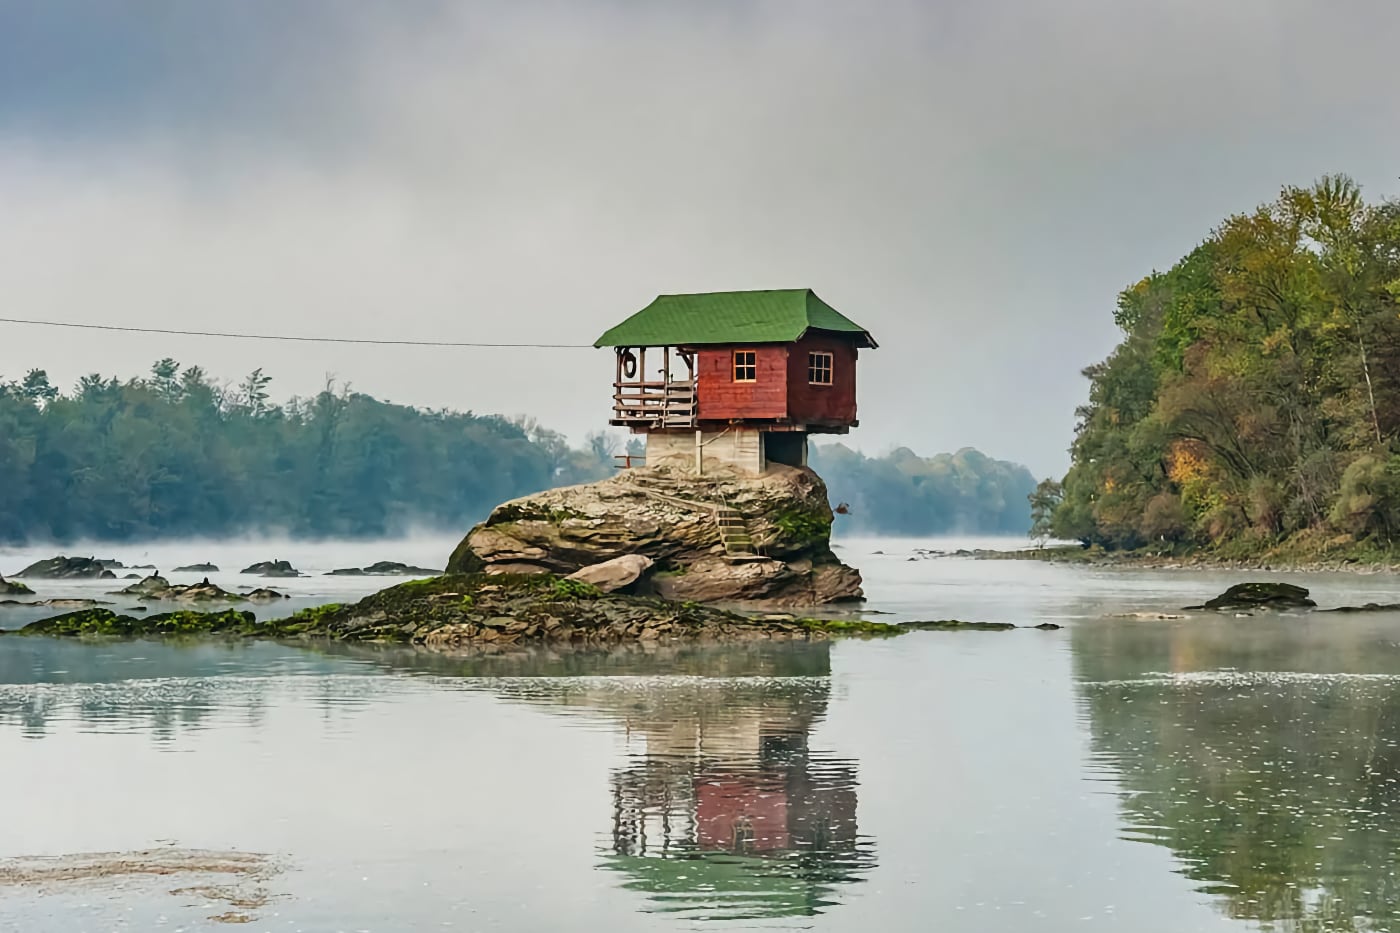 10 самых маленьких домов в мире. Один из них стоит на камне в реке